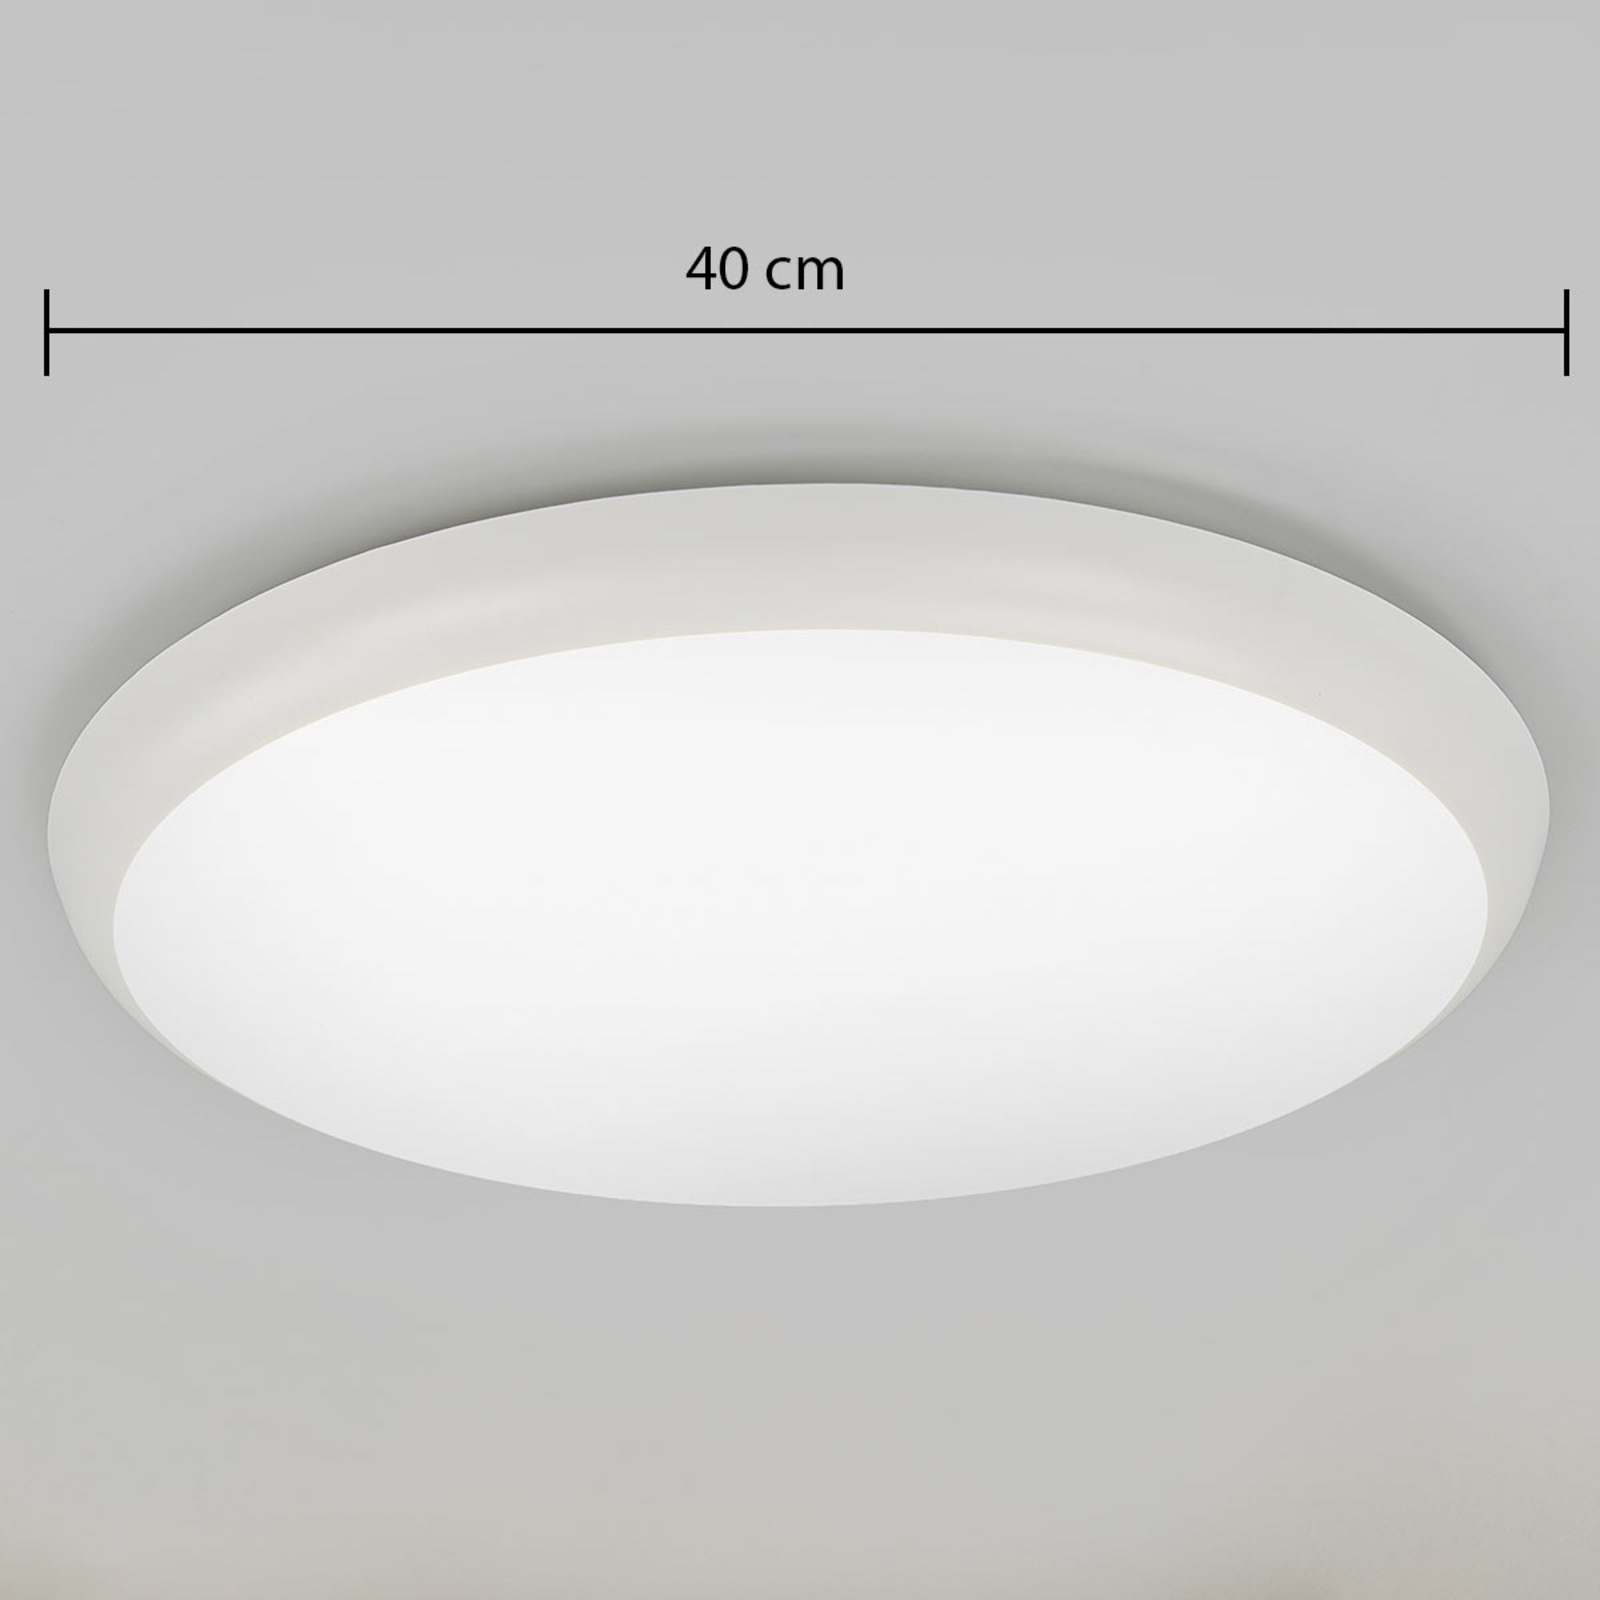 LED-Deckenleuchte Augustin, rund, Ø 40 cm